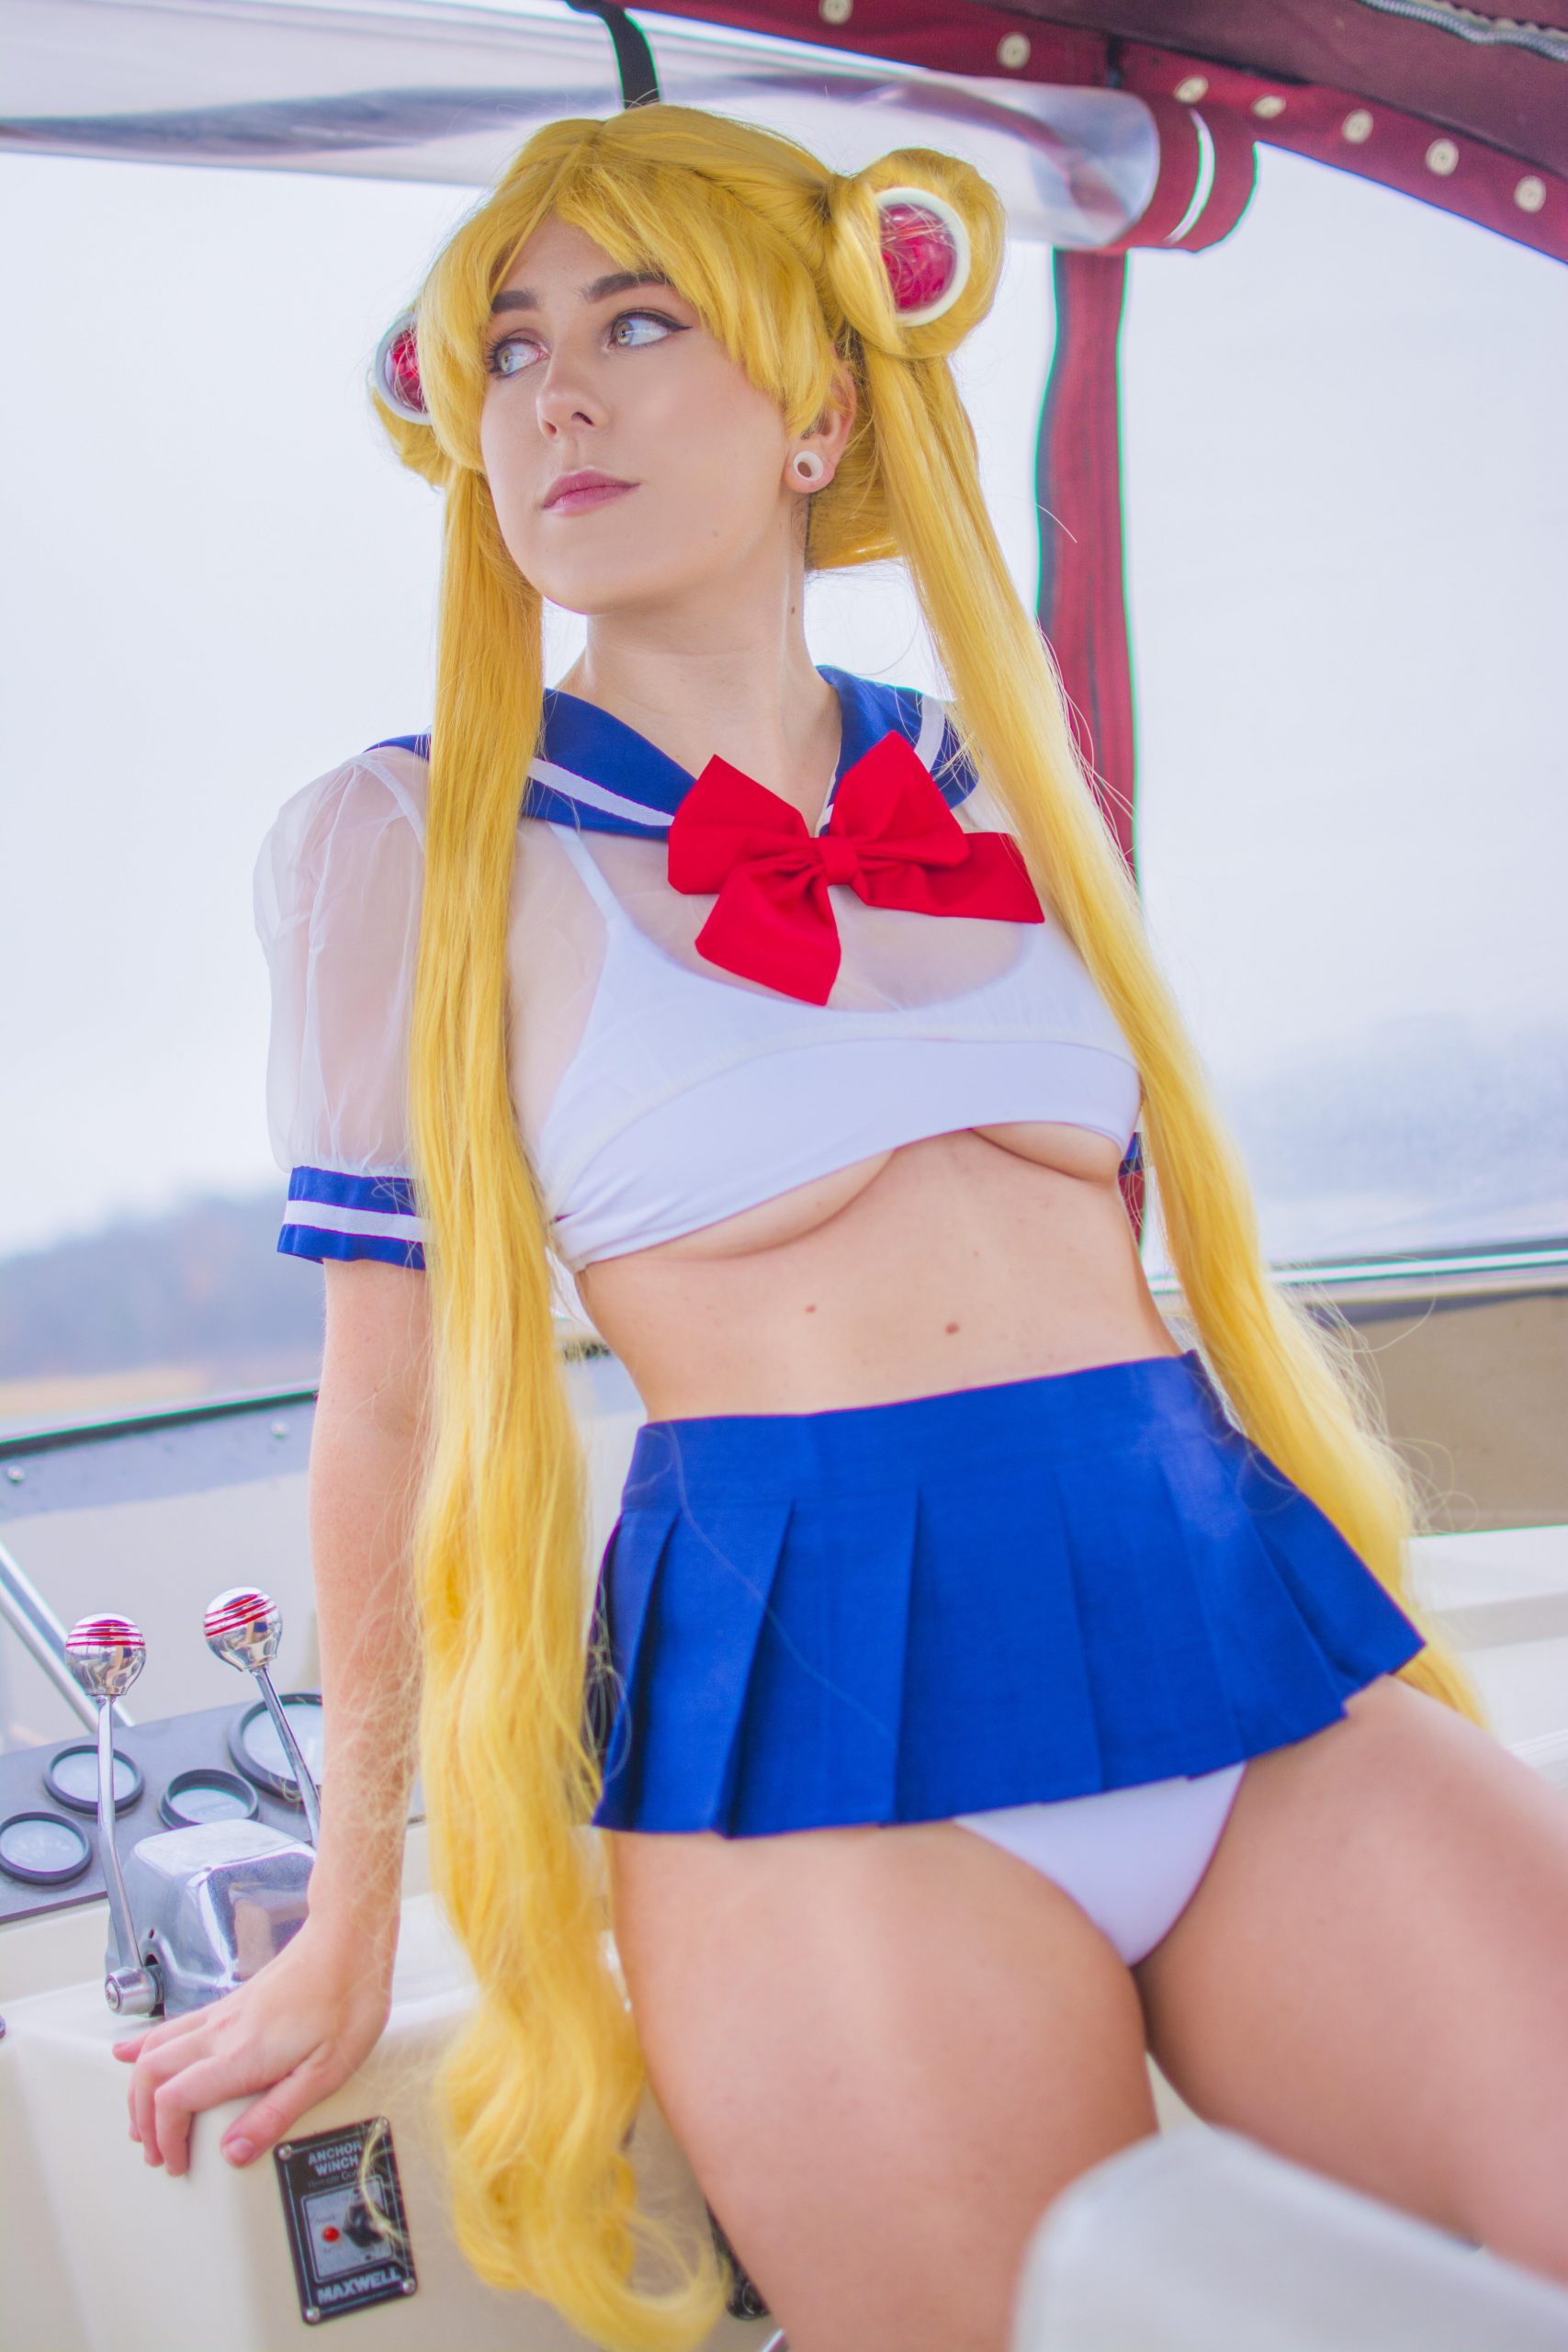 Sailor Sailor Moon From Sailor Moon By WowMalPal